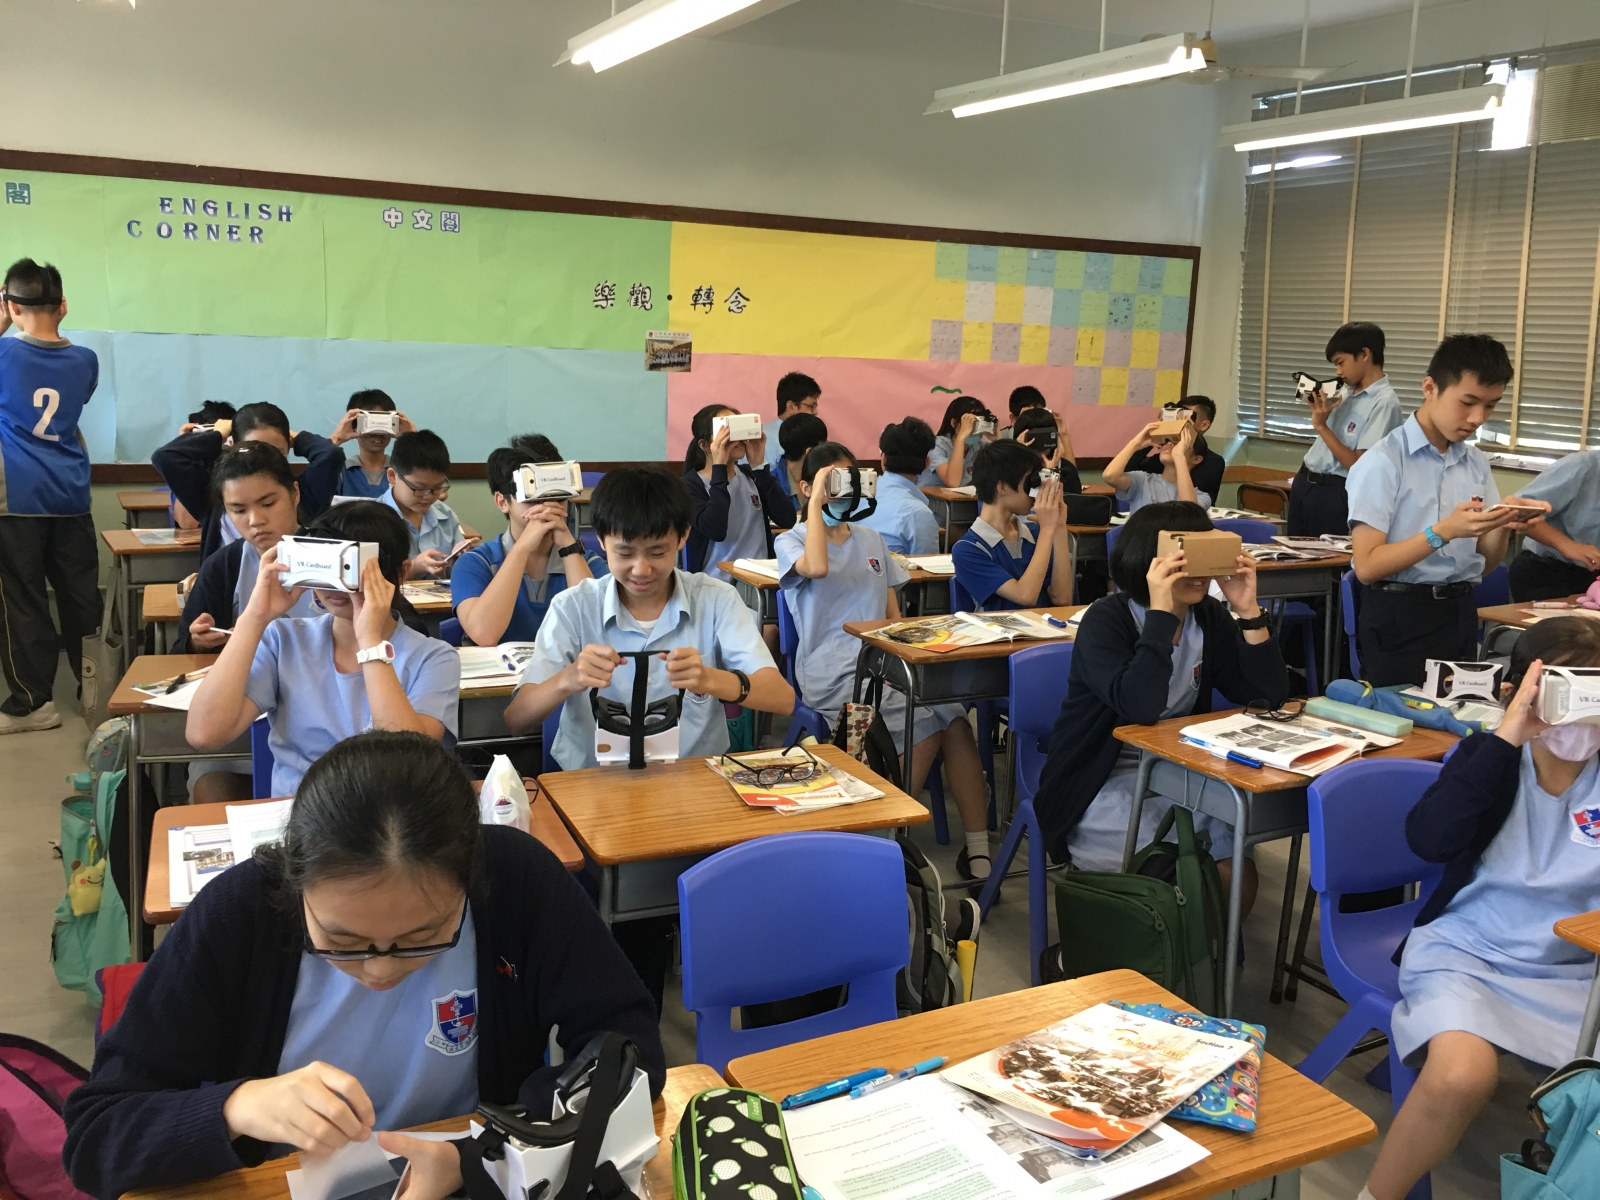 黃老師的VR教學為同學帶來新鮮感%u3002